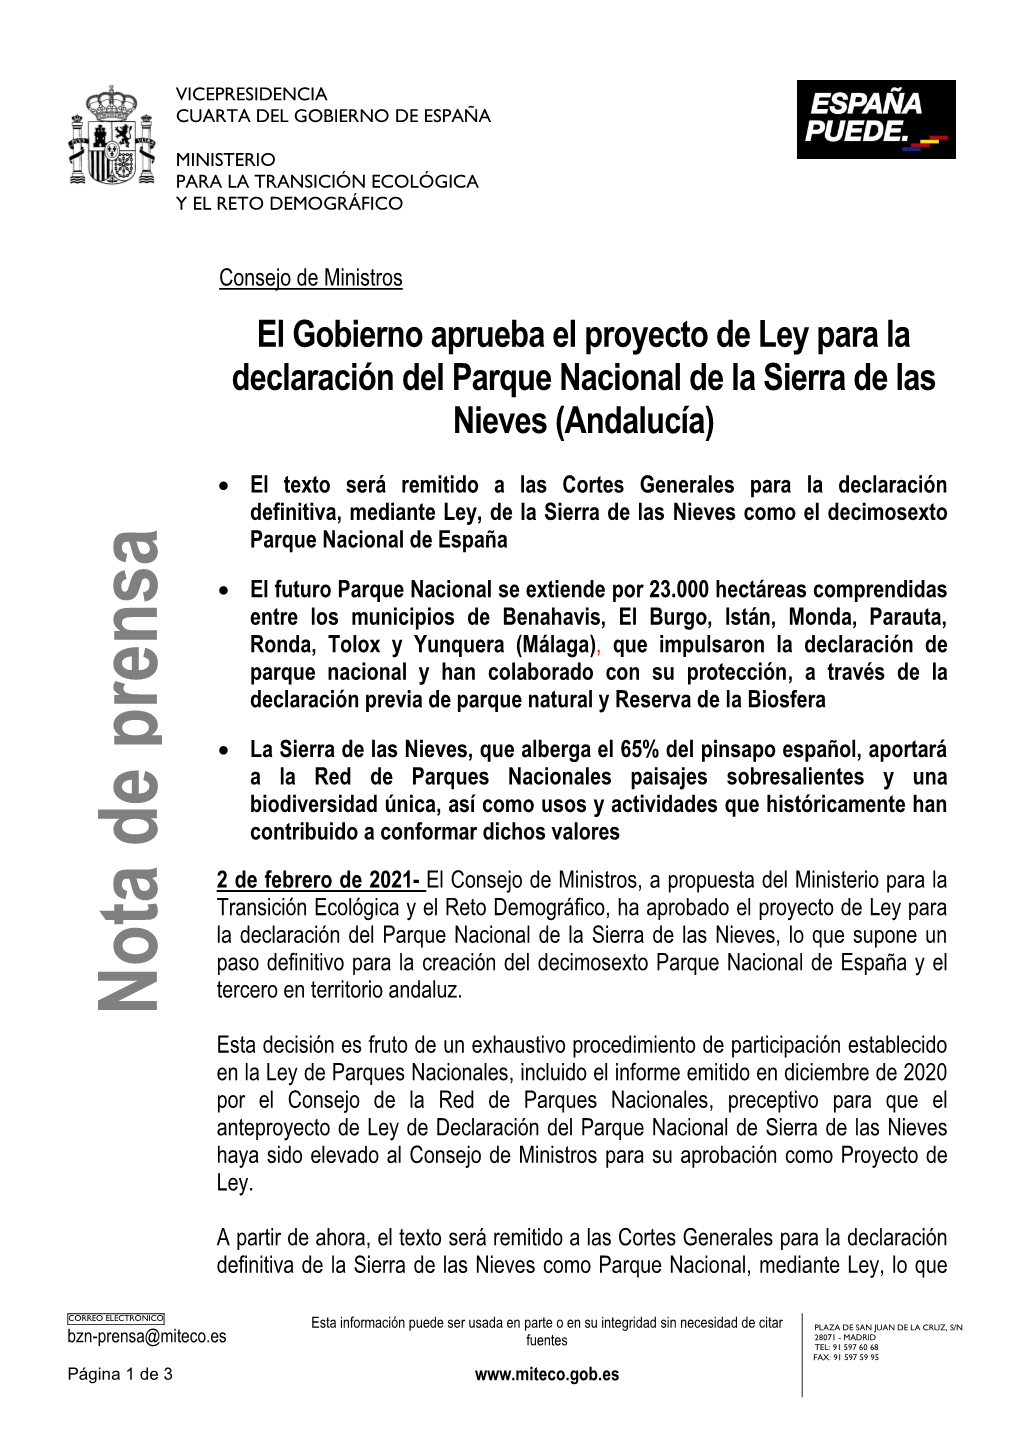 El Gobierno Aprueba El Proyecto De Ley Para La Declaración Del Parque Nacional De La Sierra De Las Nieves (Andalucía)